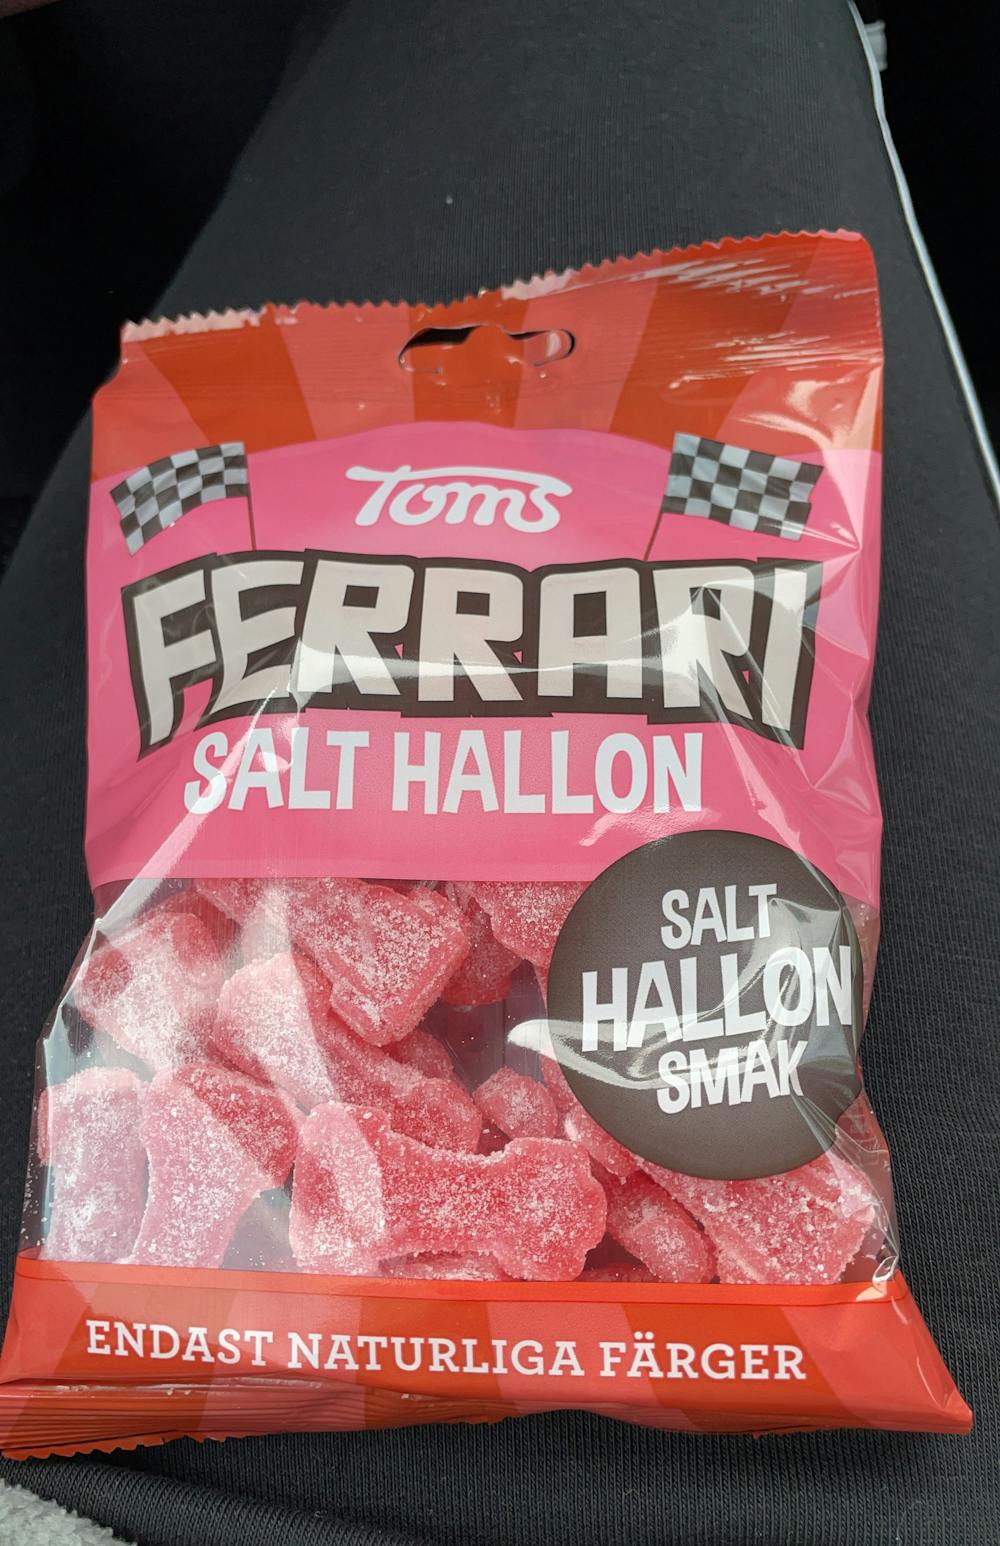 Ferrari salt hallon, Toms